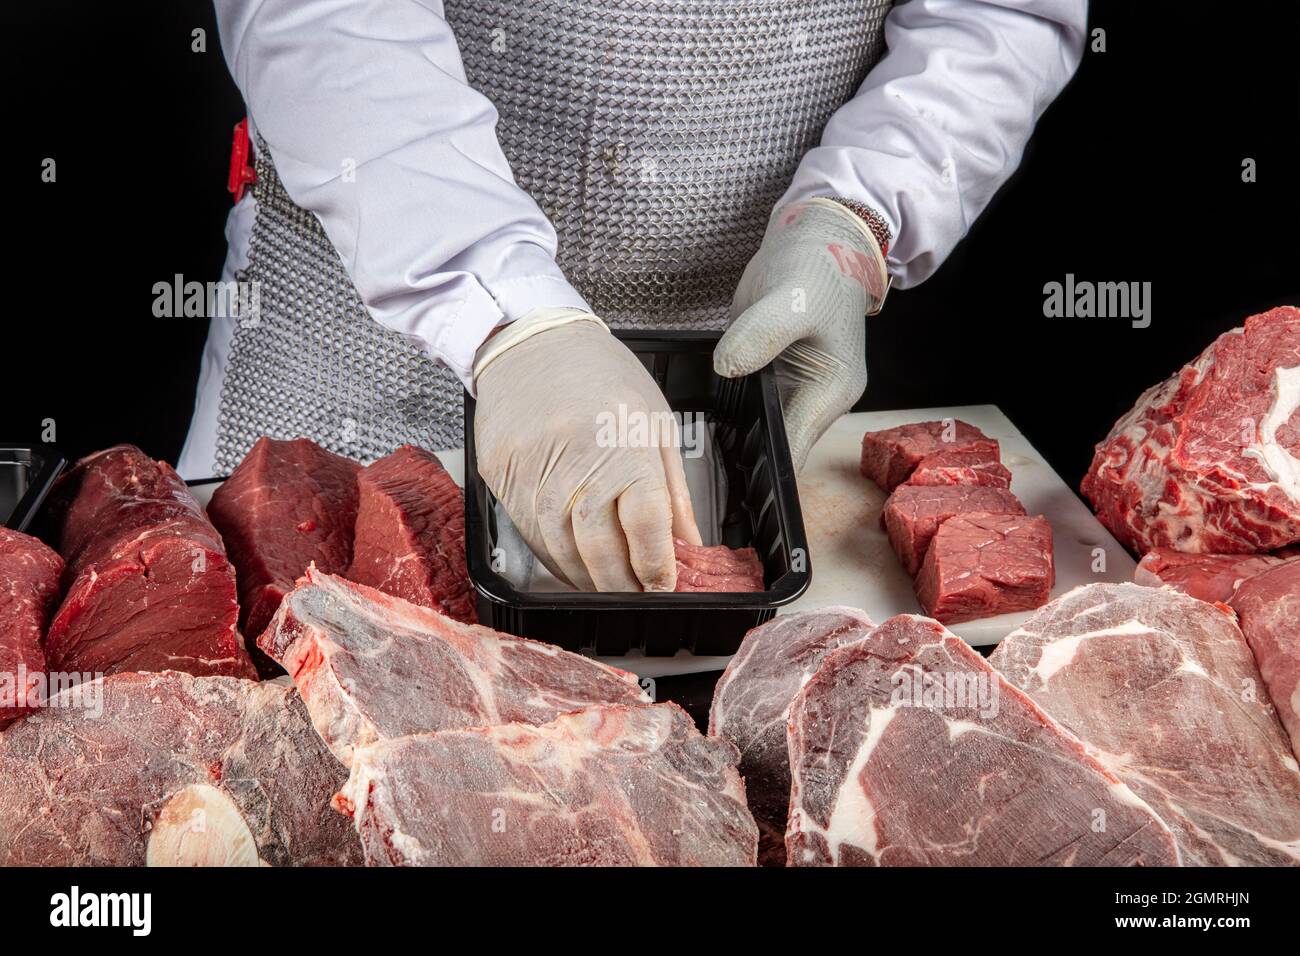 Carnicero cortando carne. Chef en guantes de látex blanco sosteniendo  trozos de carne cruda sobre una tabla de corte de poliuretano blanco, sobre  un fondo oscuro Fotografía de stock - Alamy